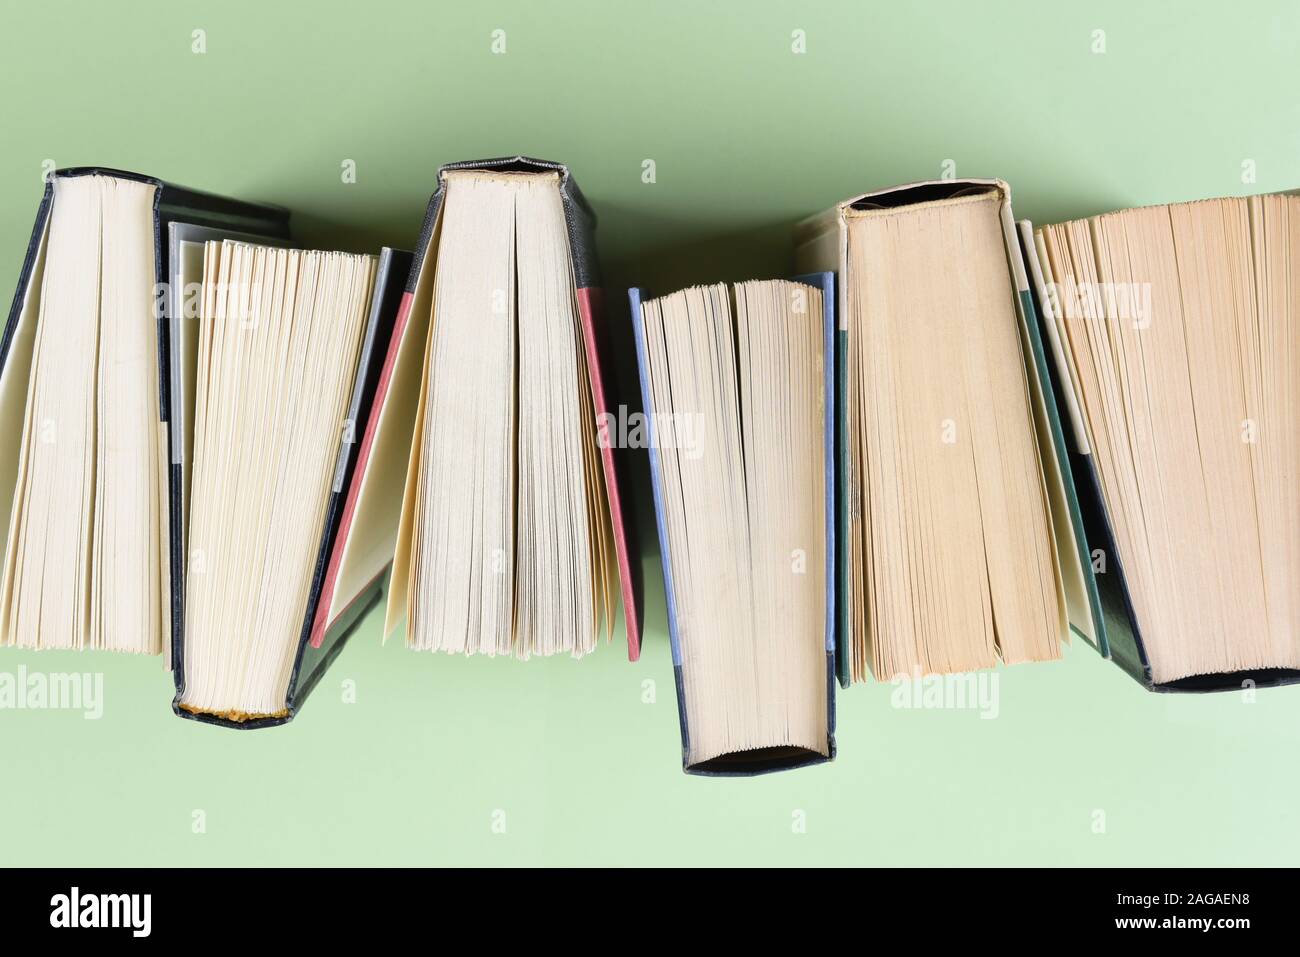 Hohen winkel Nahaufnahme von einer Reihe von Büchern auf einem hellgrünen Hintergrund. Stockfoto